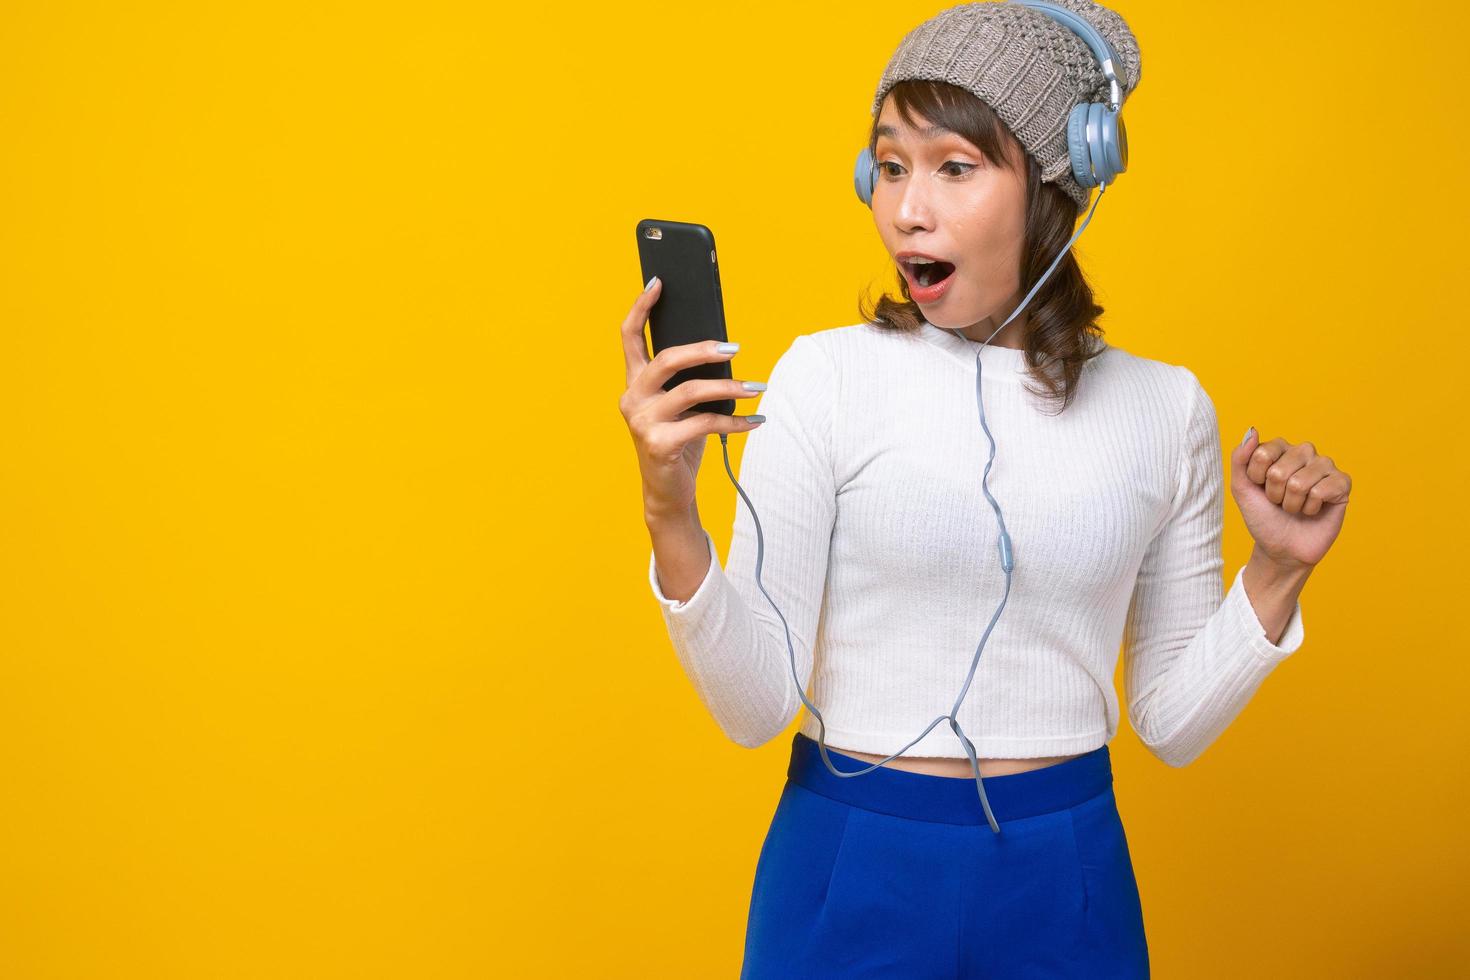 une femme asiatique tient un appel téléphonique et lit des messages téléphoniques sous le choc et l'excitation. le fond jaune vif. concept de choc et wow photo